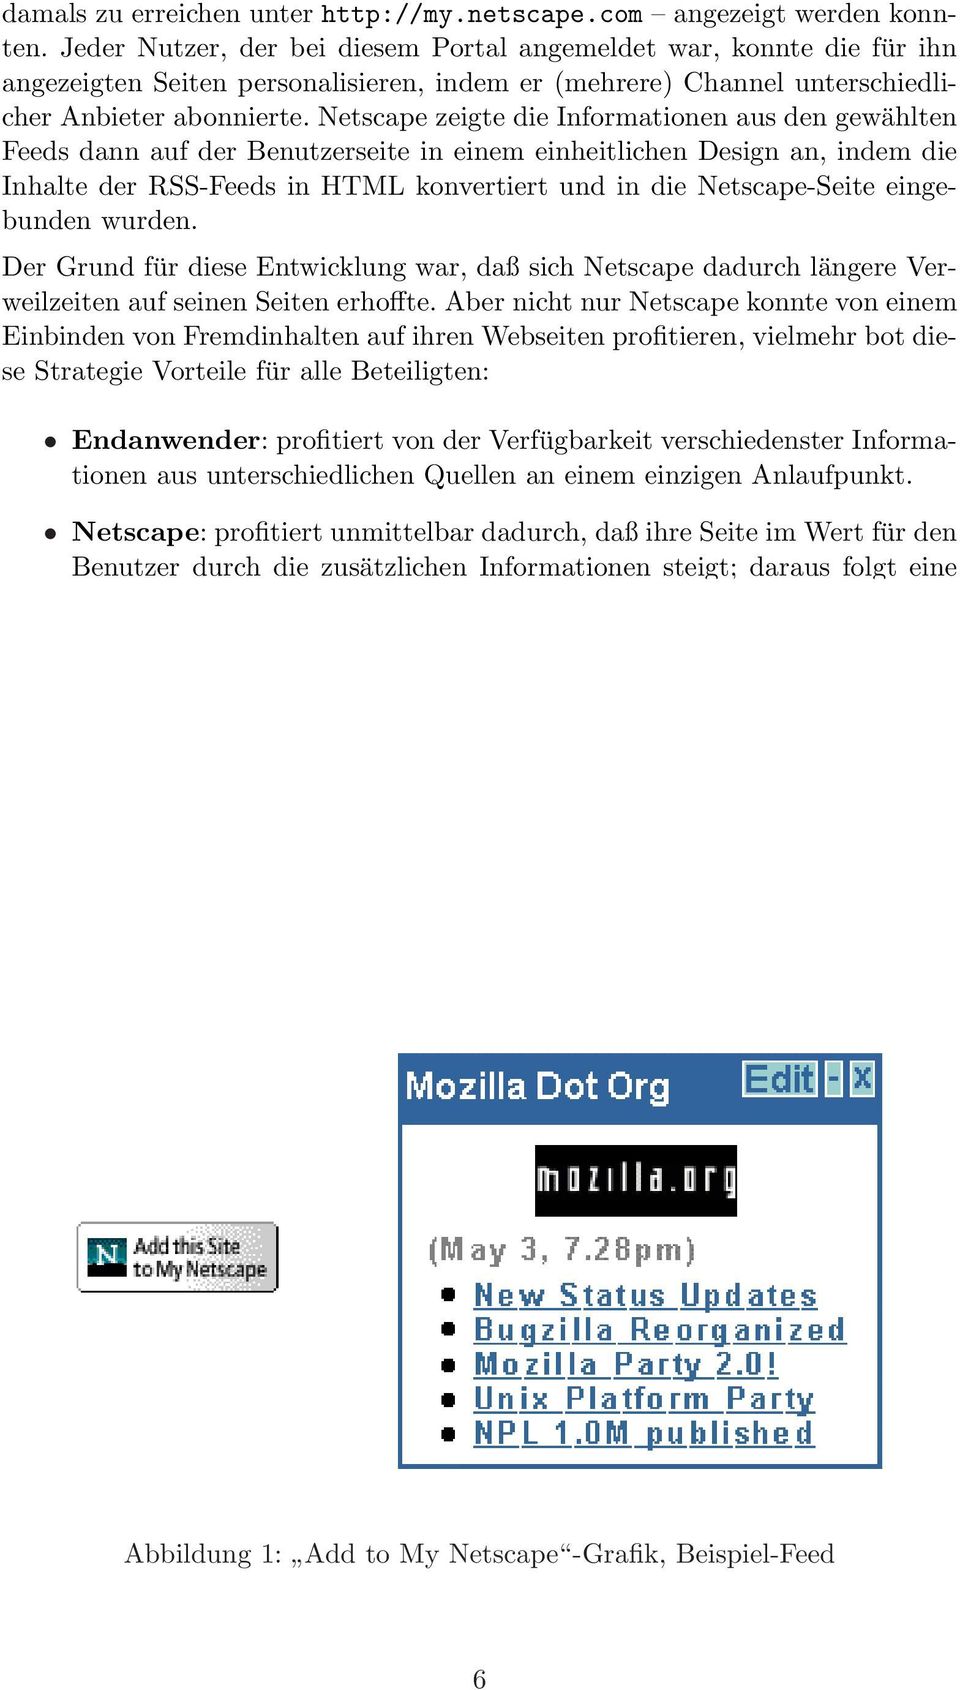 Netscape zeigte die Informationen aus den gewählten Feeds dann auf der Benutzerseite in einem einheitlichen Design an, indem die Inhalte der RSS-Feeds in HTML konvertiert und in die Netscape-Seite